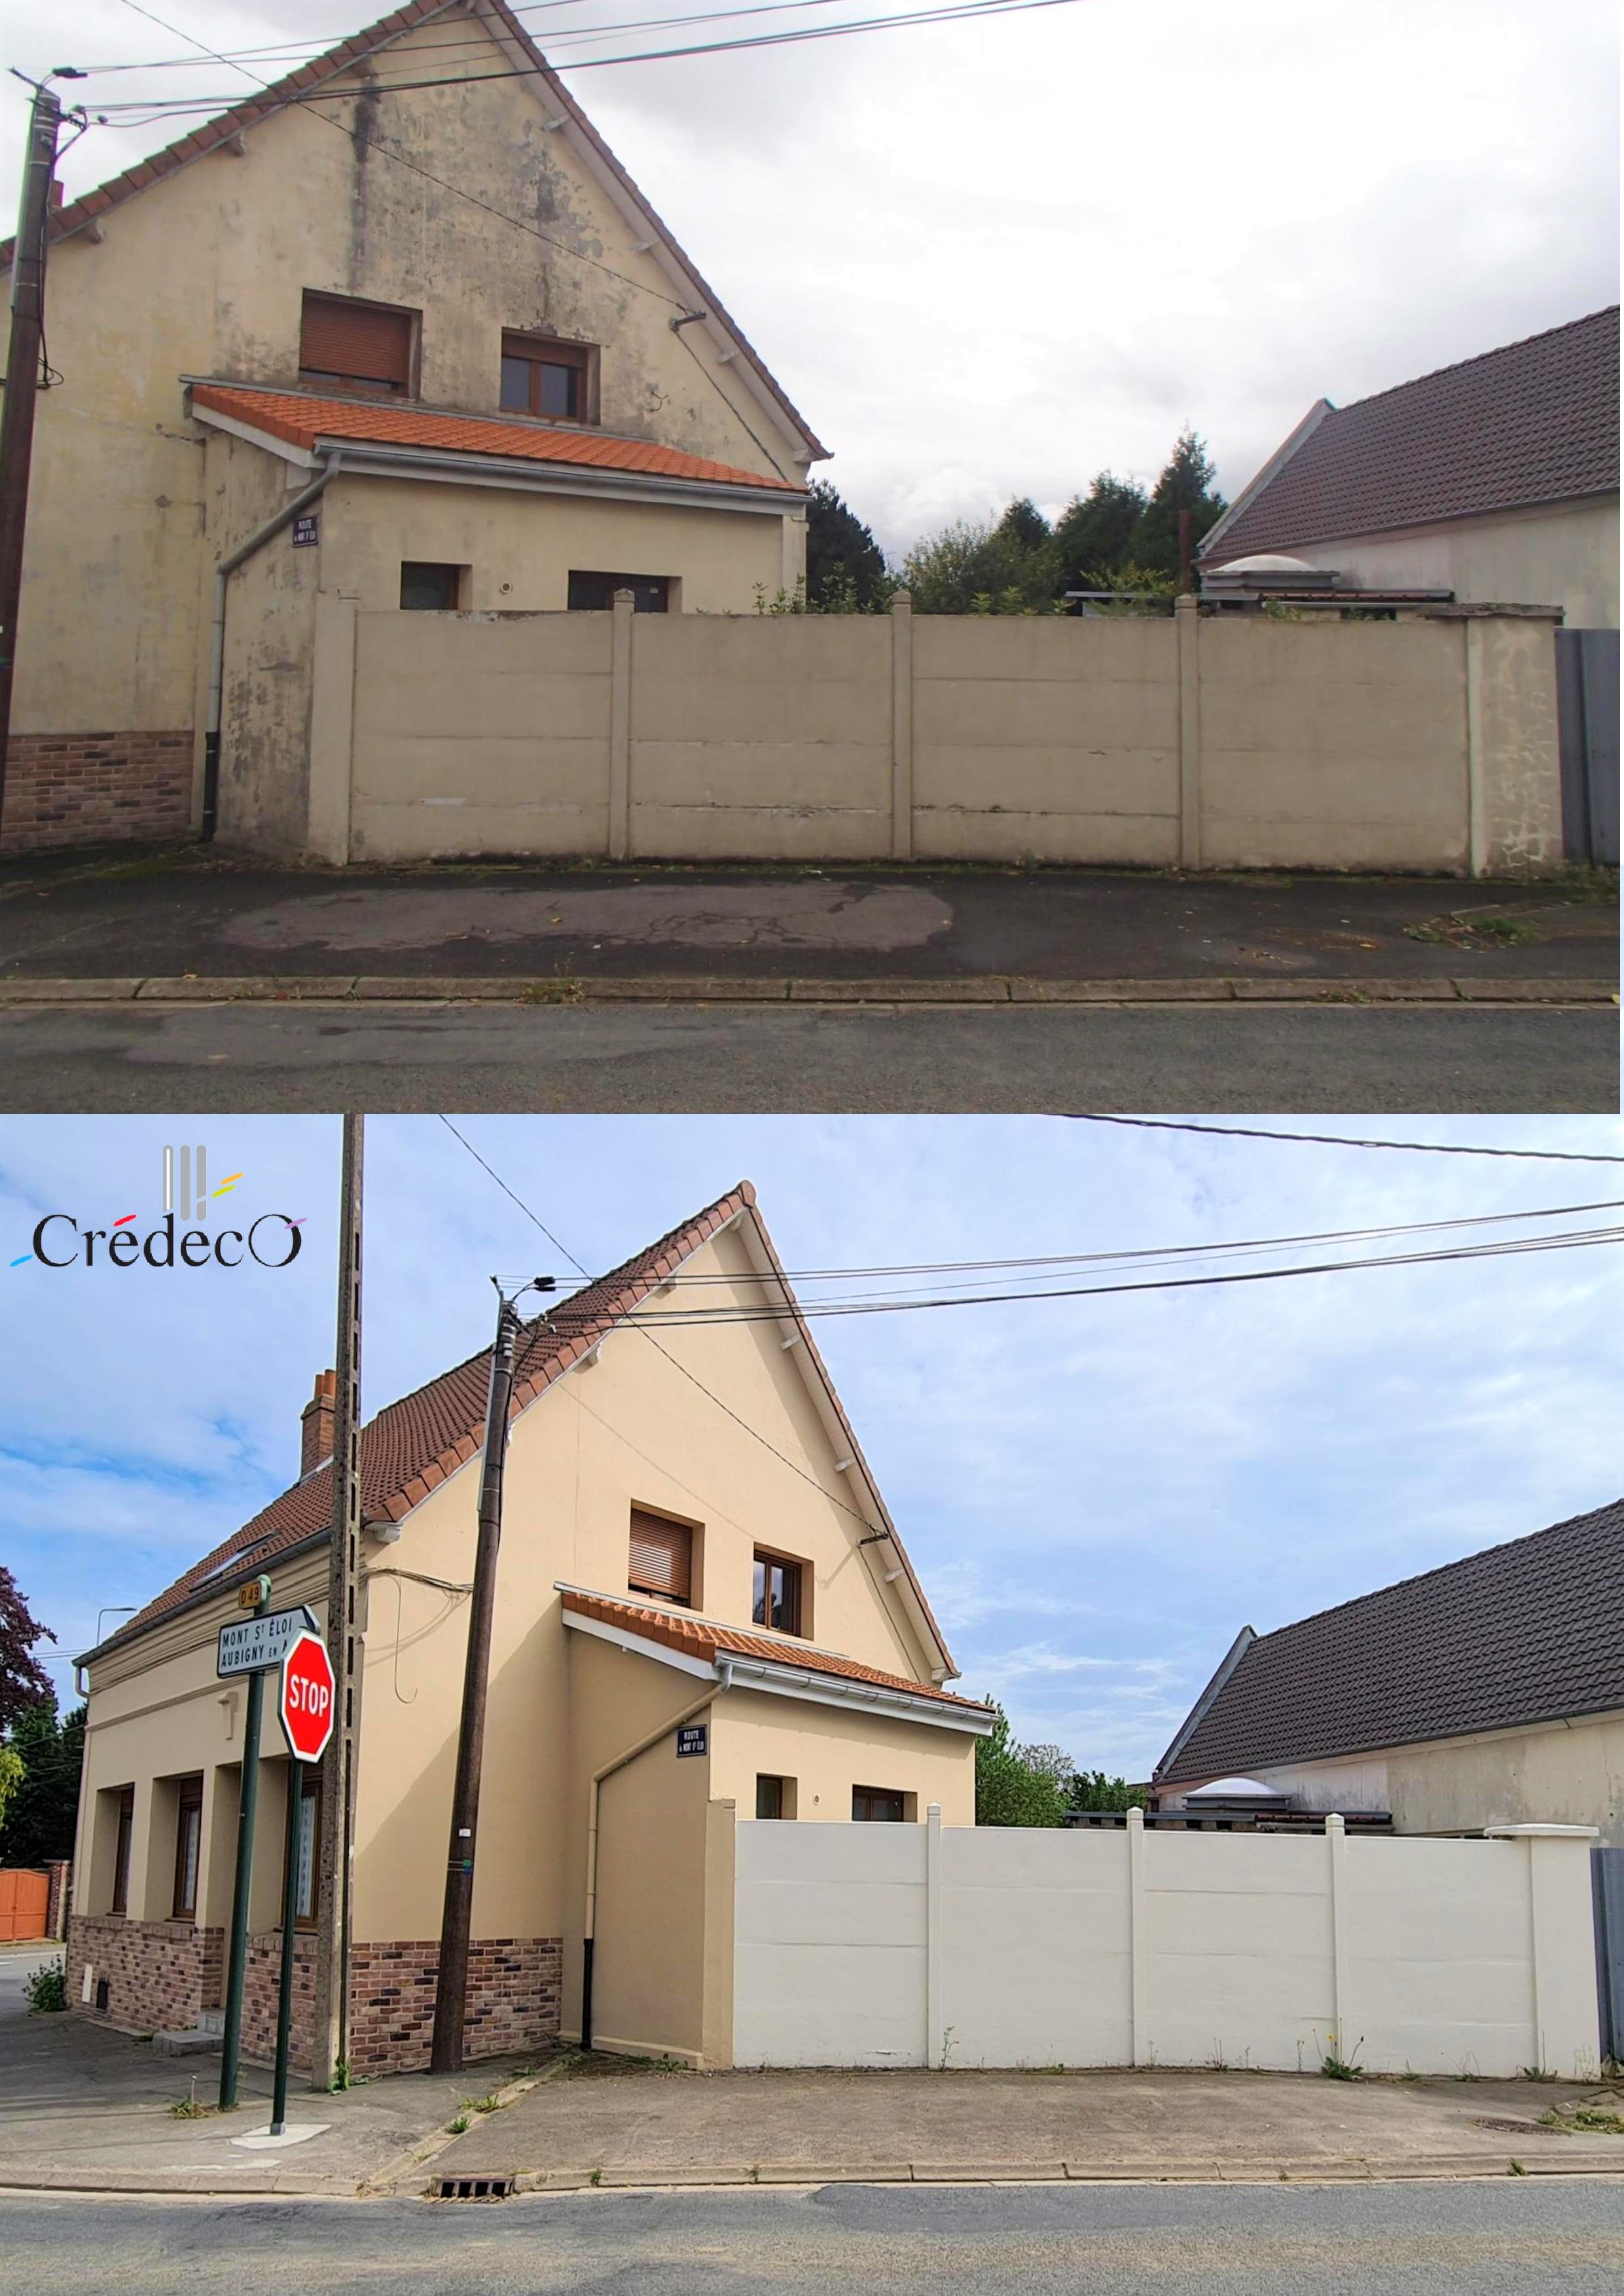 Rénovation façade peinture extérieure Credeco Thélus peintre en bâtiment